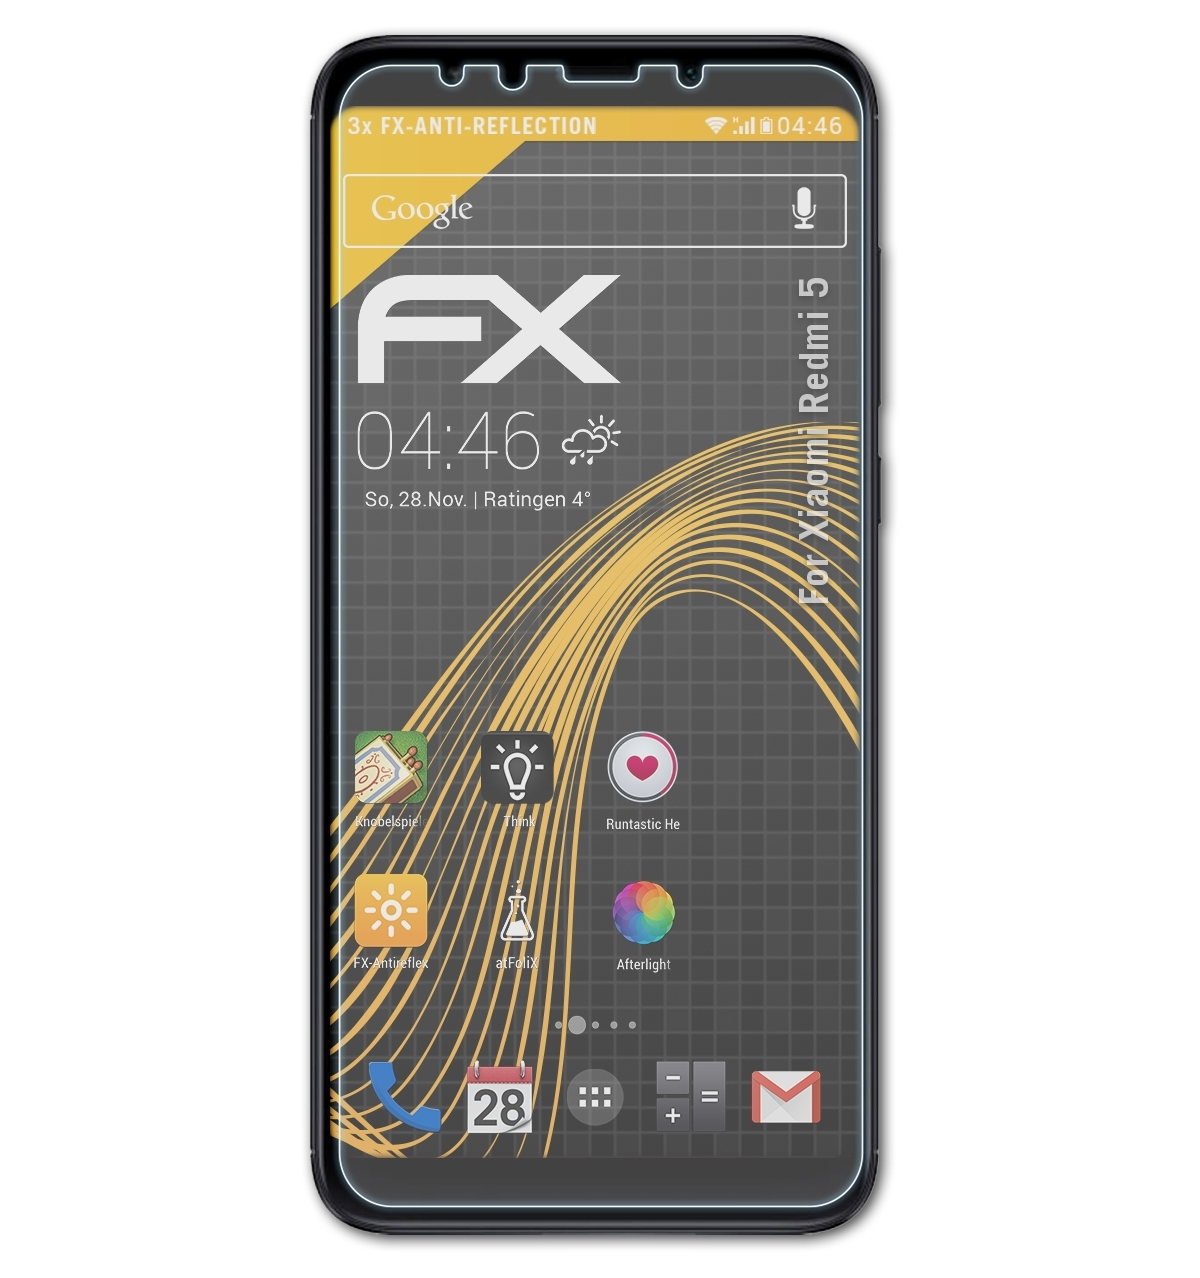 5) ATFOLIX Redmi 3x FX-Antireflex Xiaomi Displayschutz(für